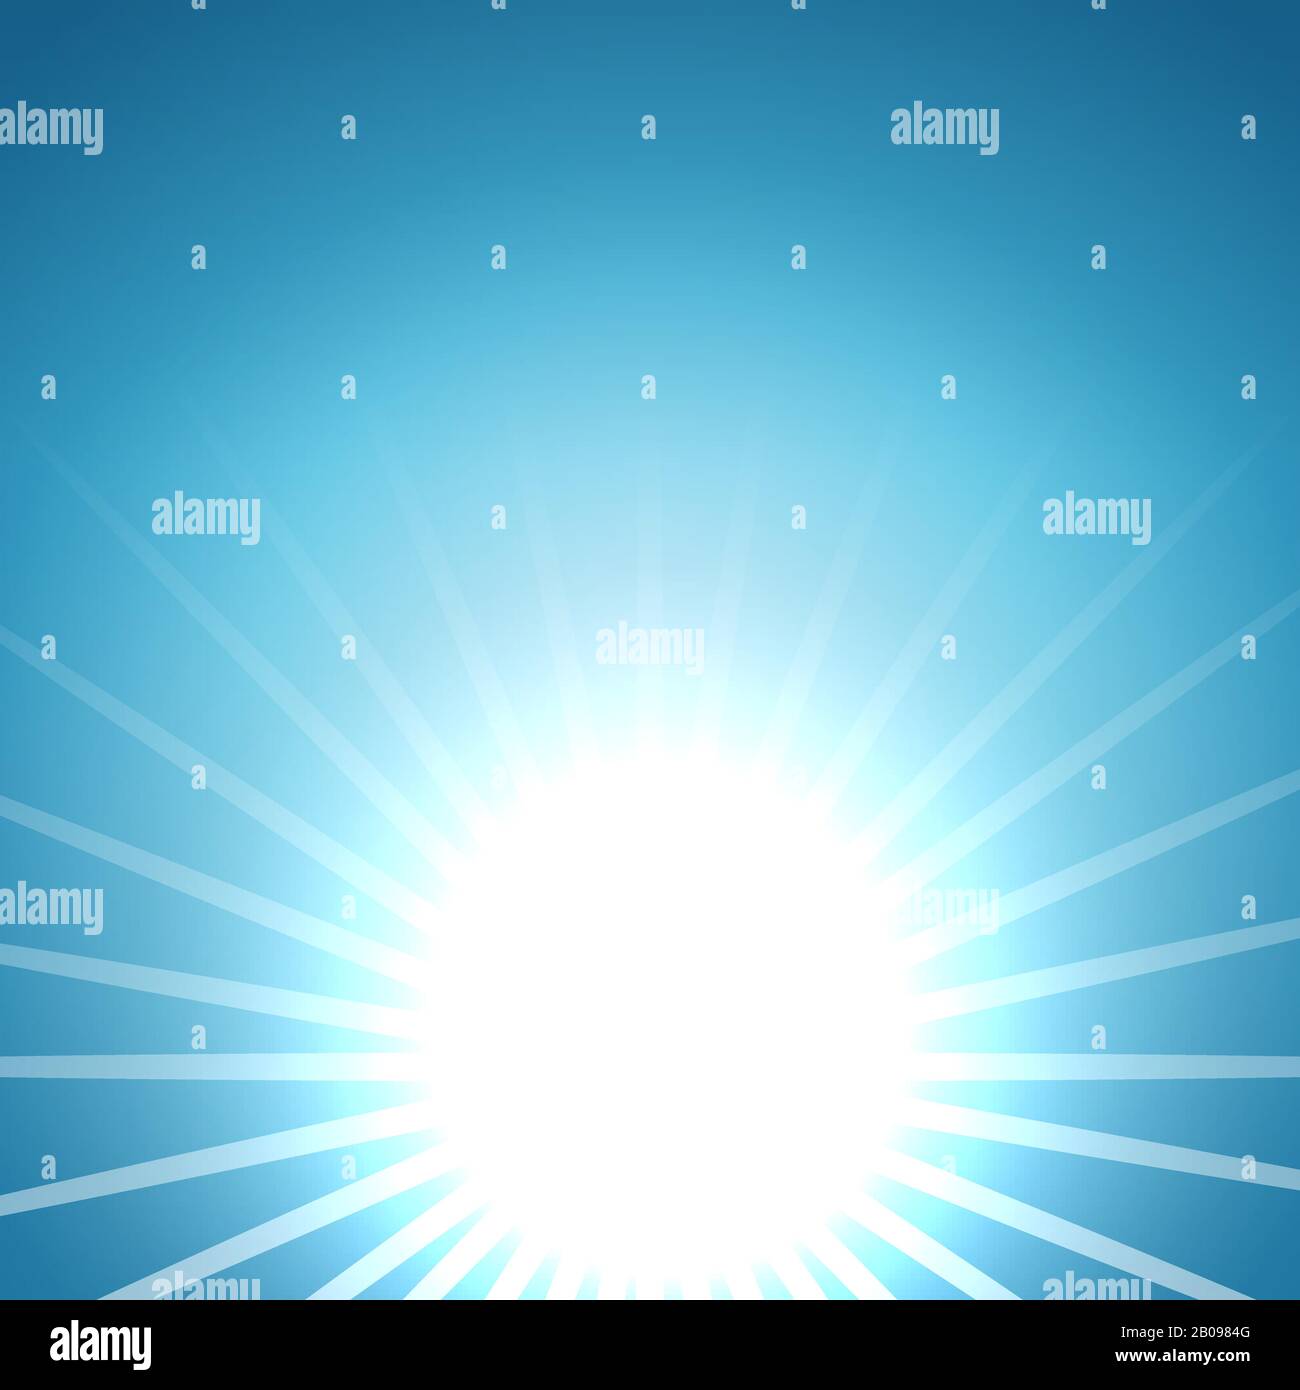 Abstrakter Vektor aufsteigender Sonnenhintergrund. Sommerliche Illustration mit heißer Morgenkulisse Stock Vektor